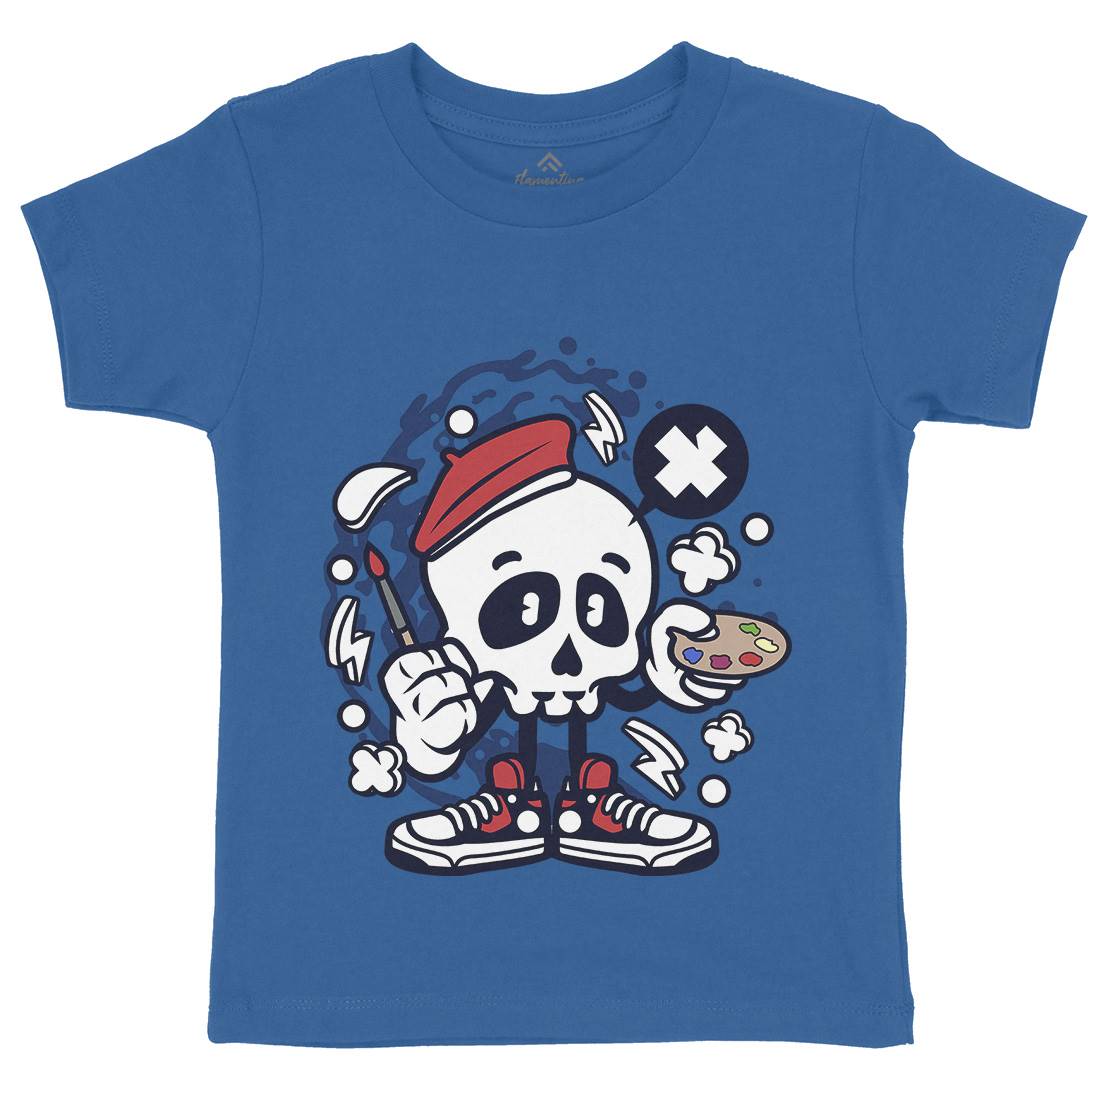 Painter Skull Kids Organic Crew Neck T-Shirt Retro C183